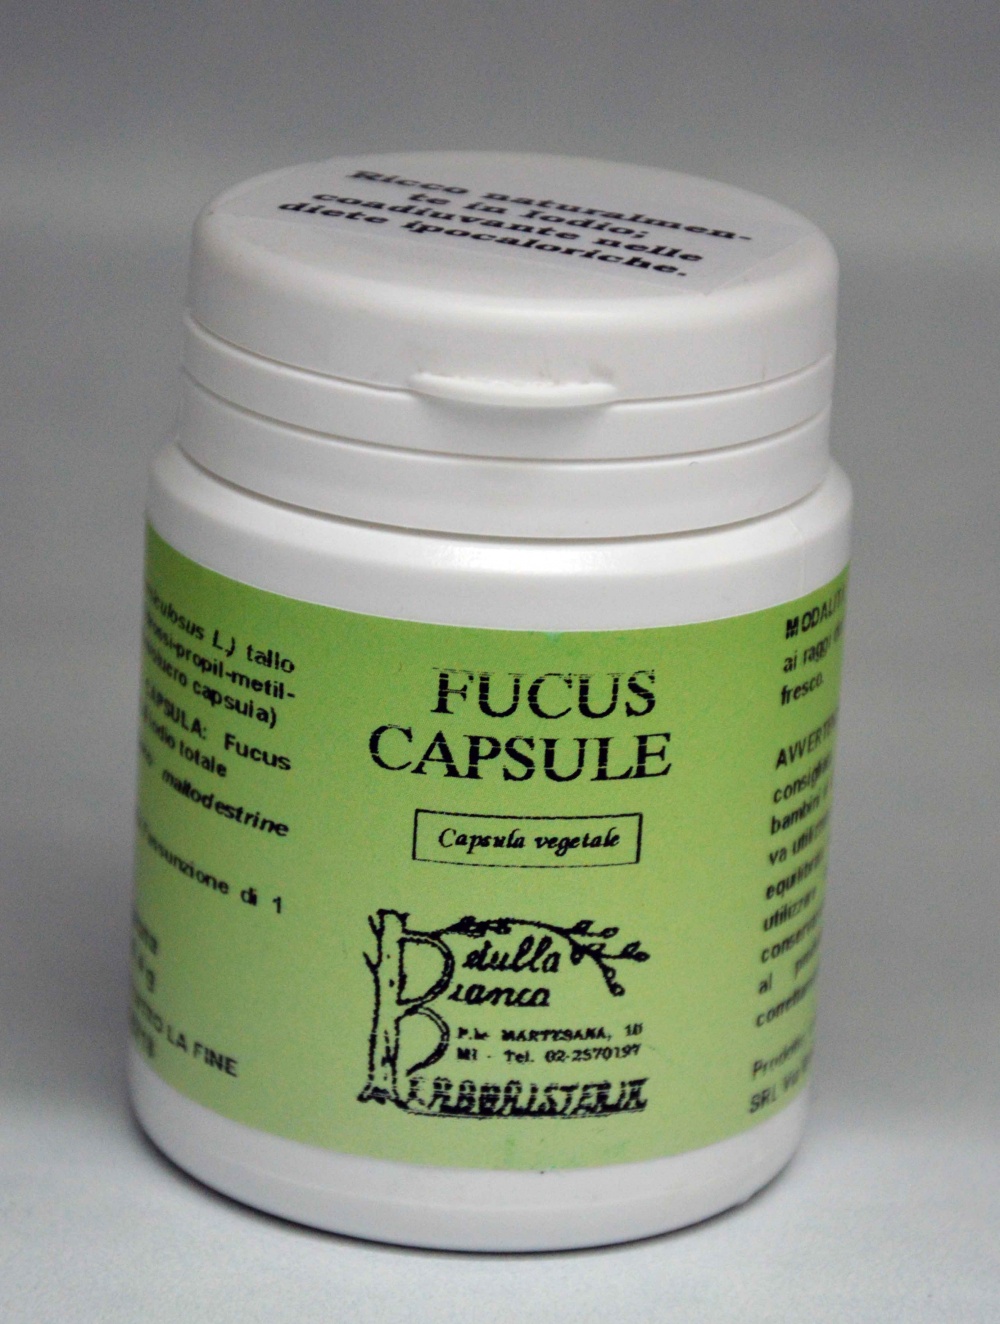 Fucus capsule